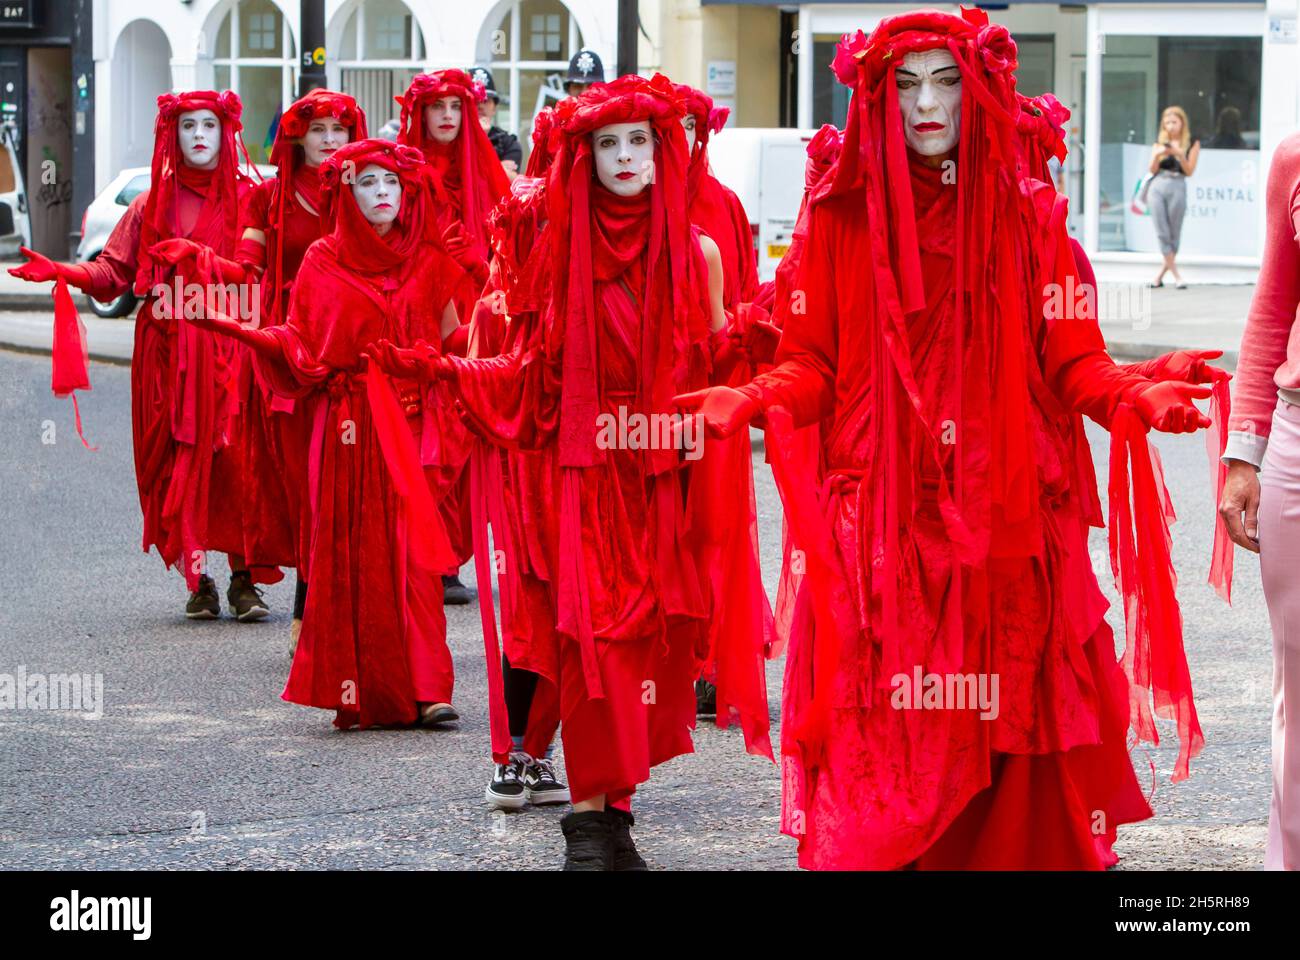 Fotografía de la calle de un grupo de artistas del circo invisible de la Brigada Roja en una demostración de cambio climático que camina en línea por las calles. Foto de stock